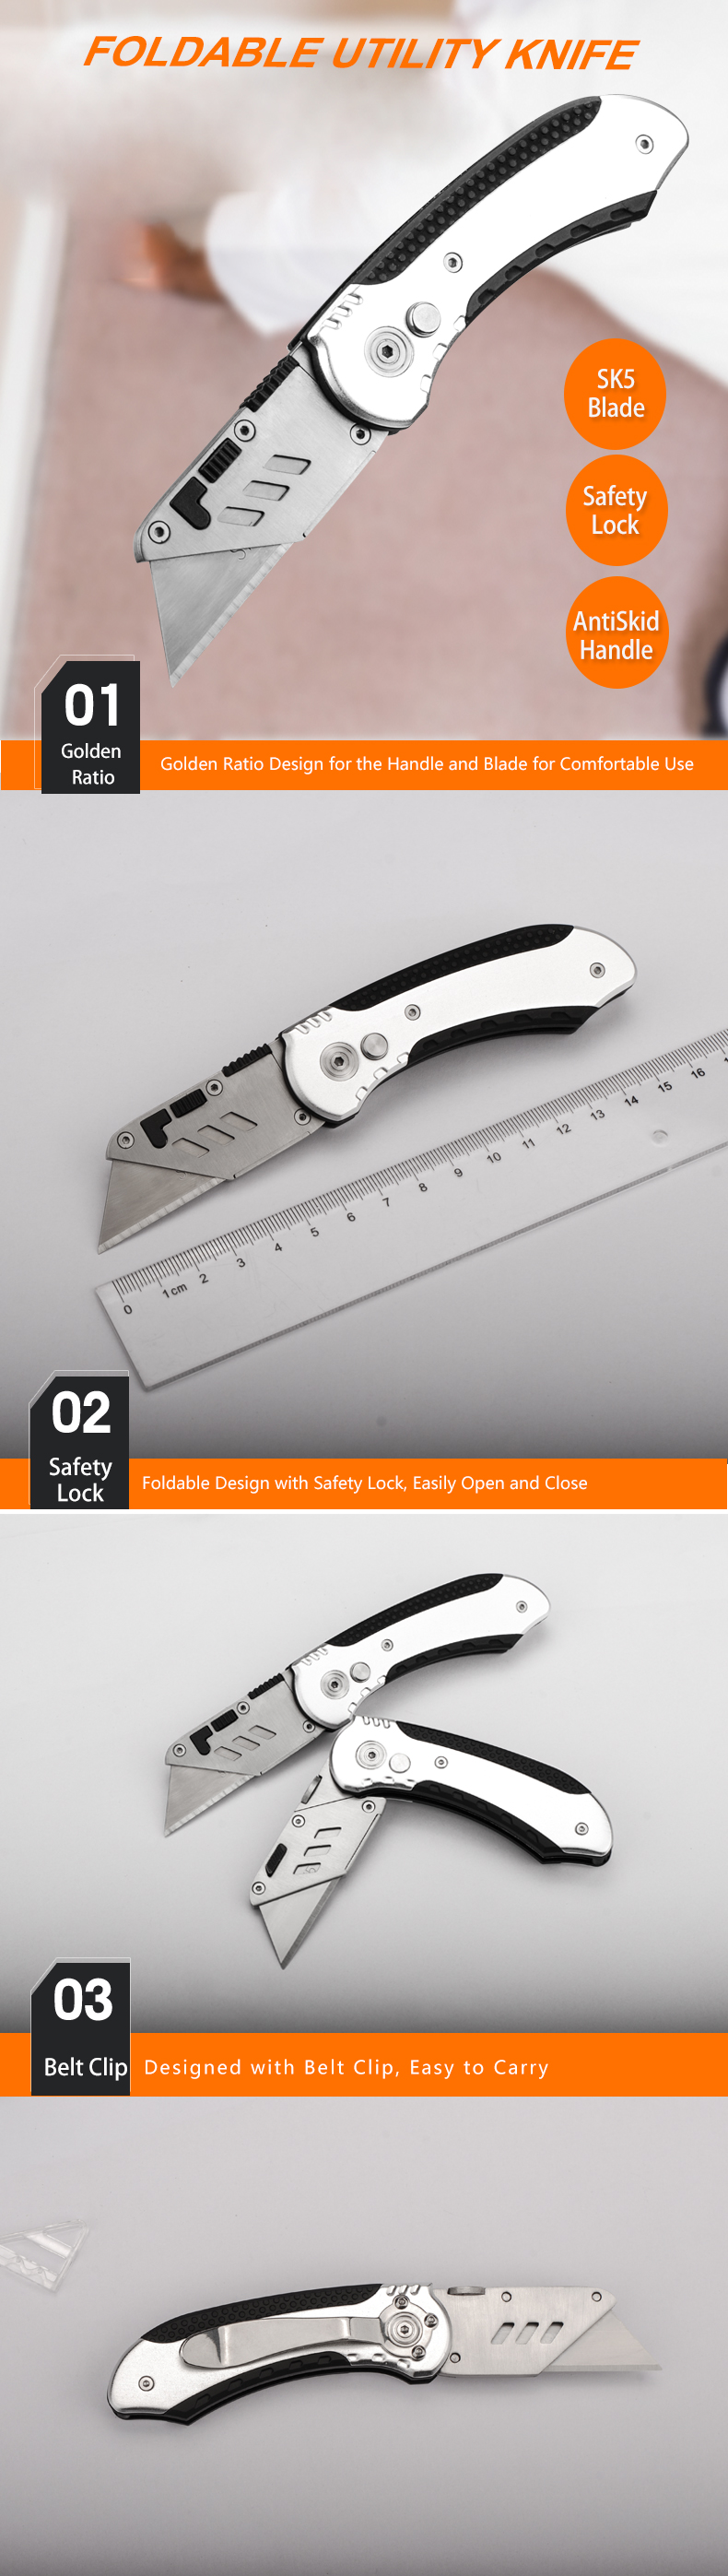 KL026 Utility Knife.jpg